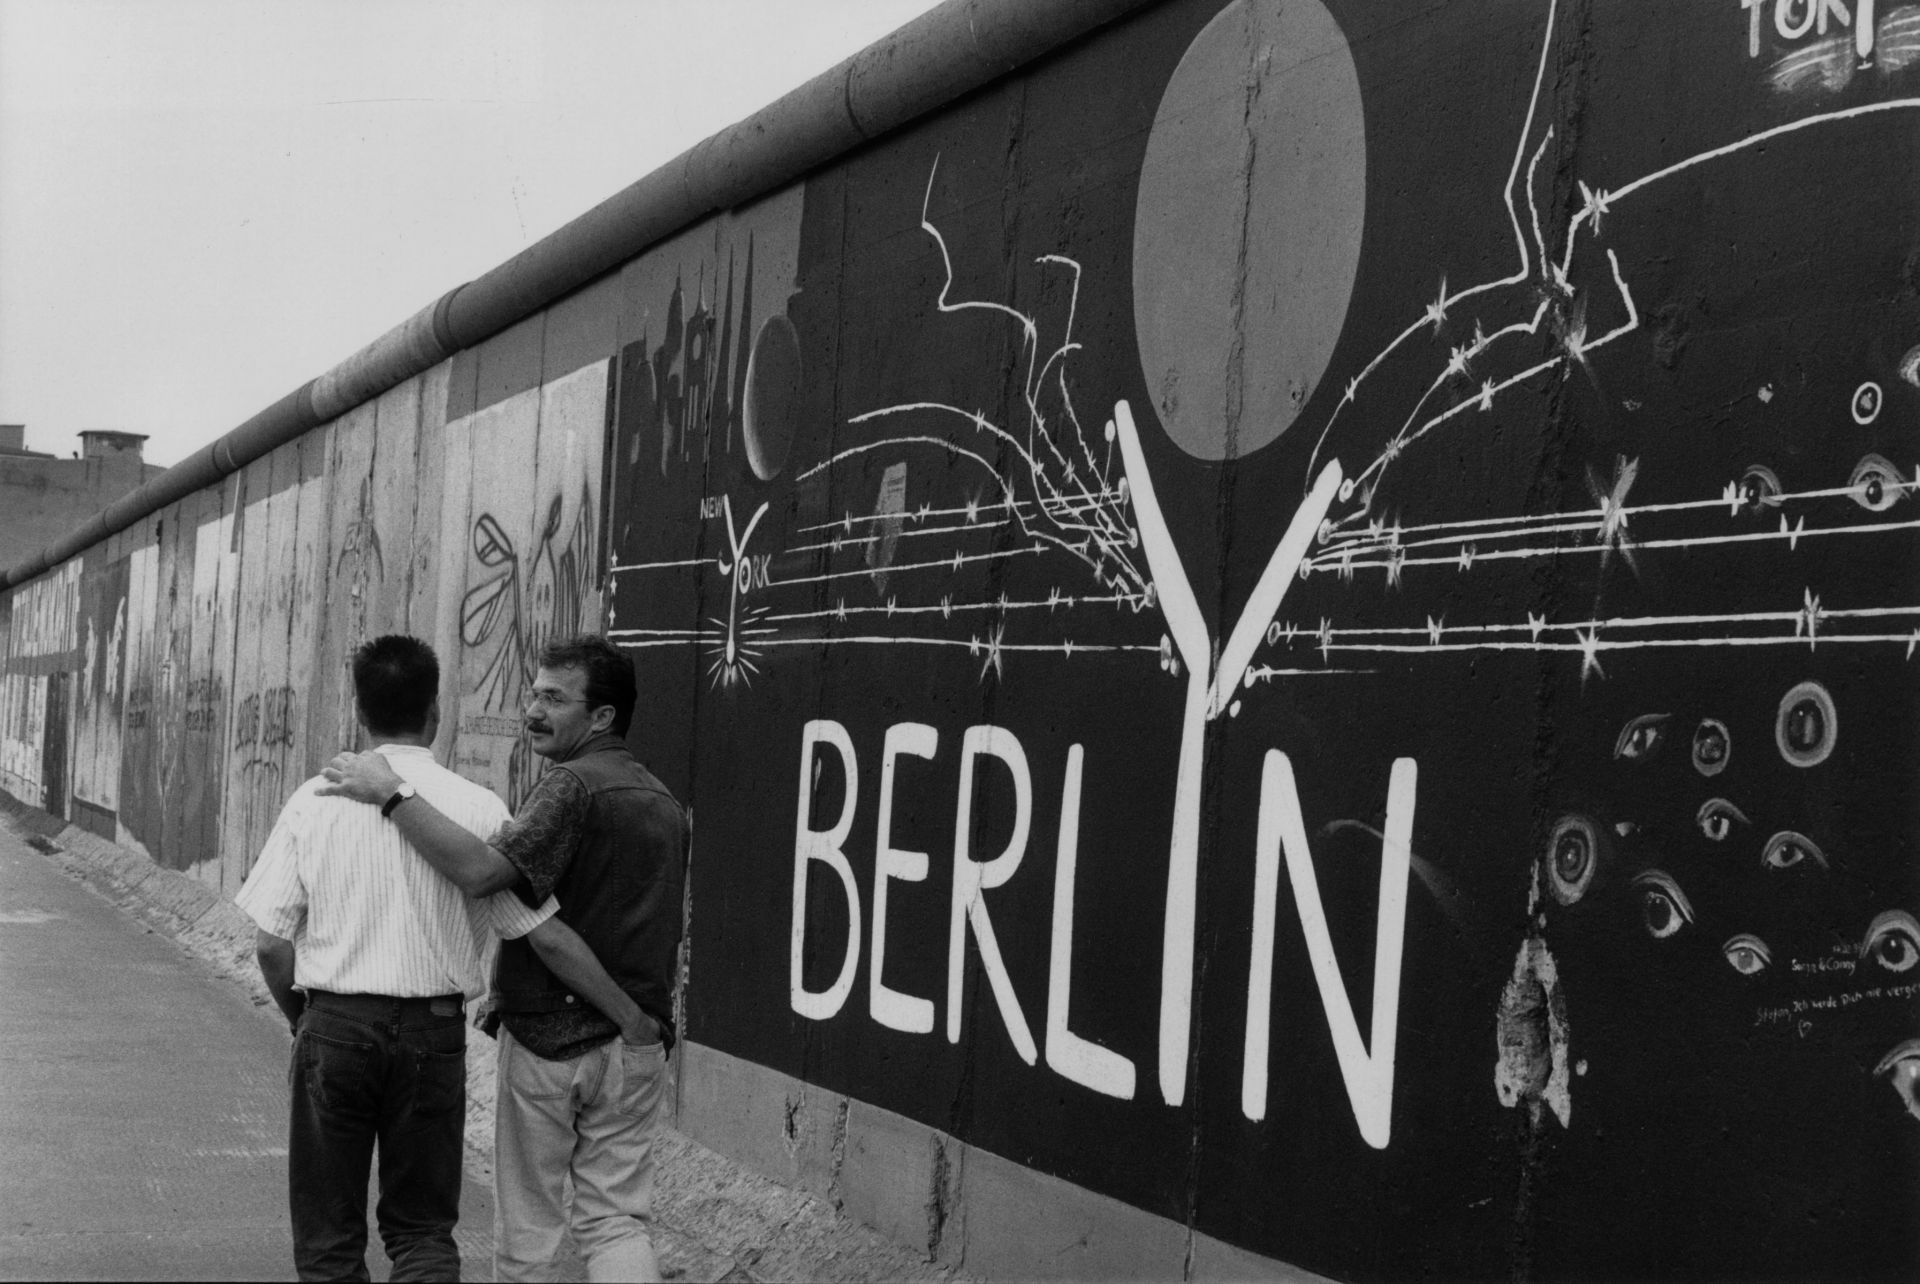 Първите графити по Берлинската стена се появяват още в годината на събарянето ѝ - 1989 г.